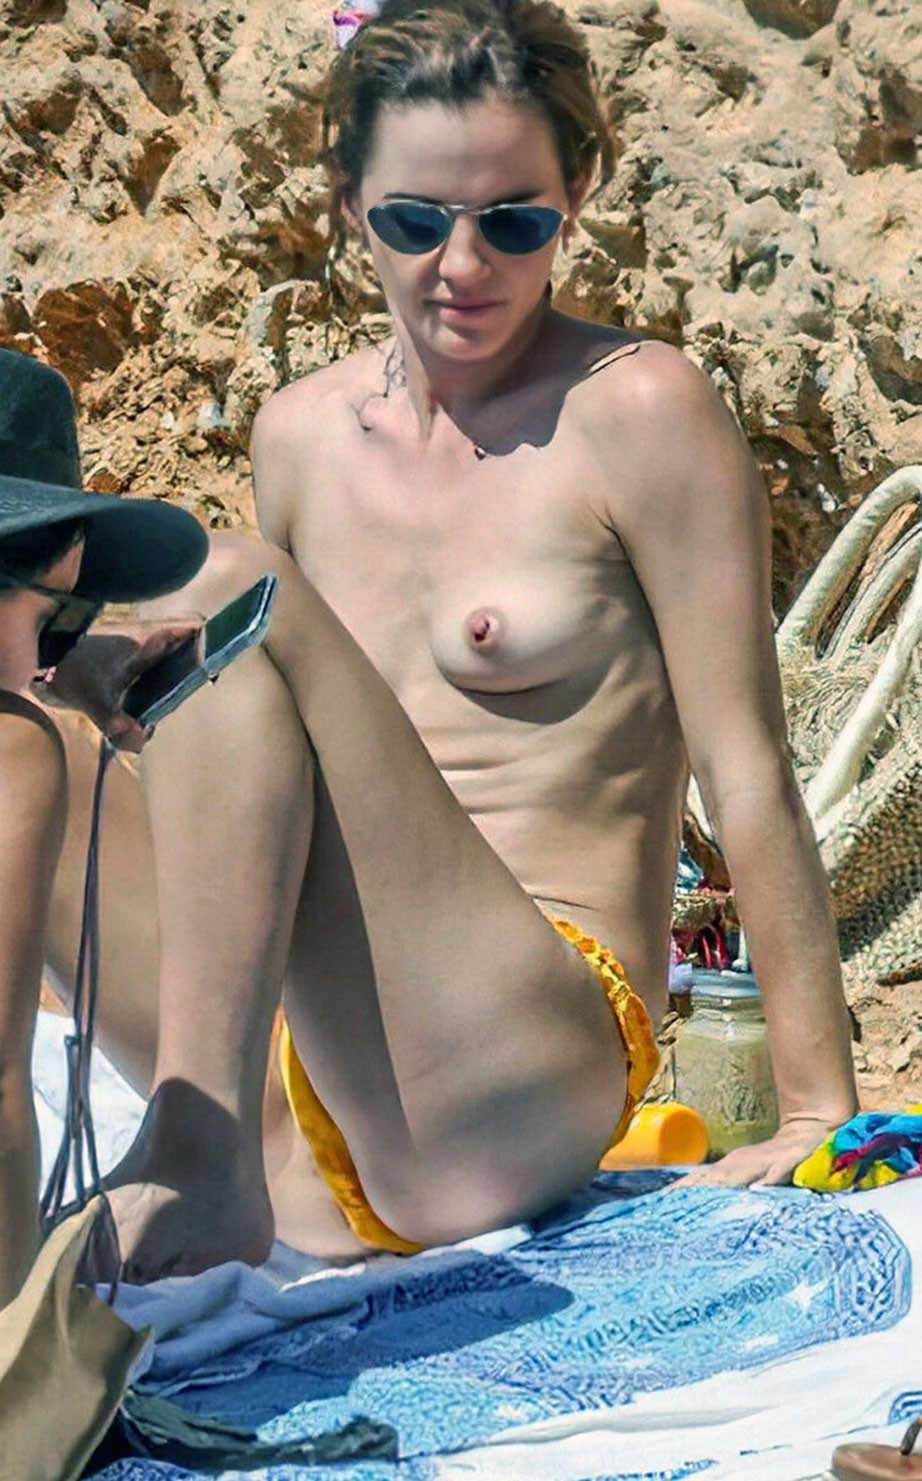 Emma Watson nude beach tits ass pussy hair boyfriend topless hot feet ScandalPost 3 optimized